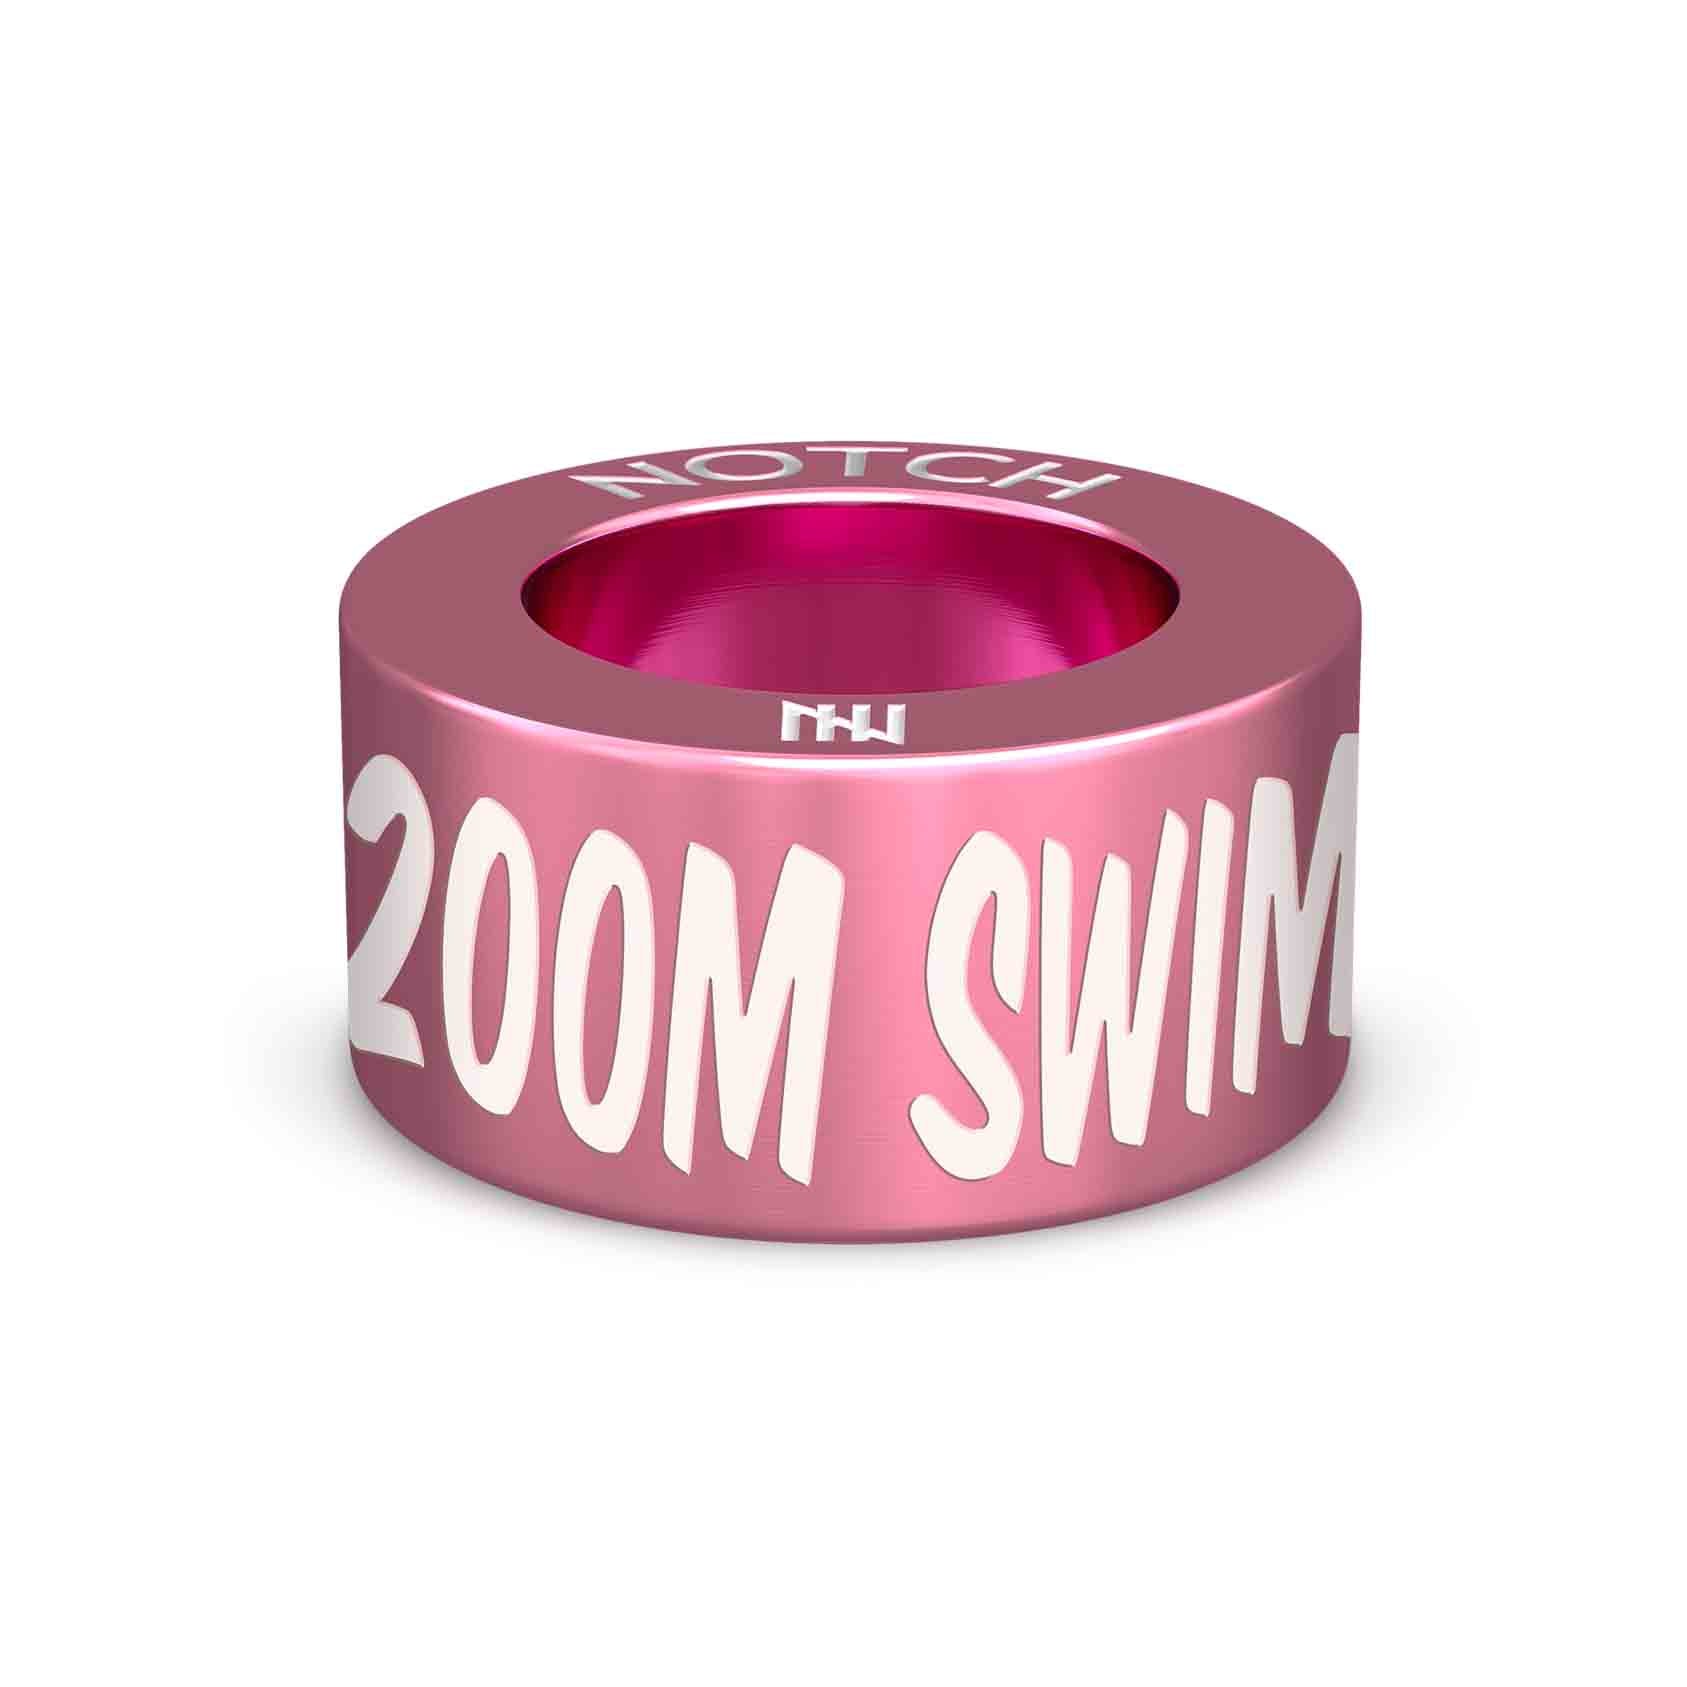 200m Swim NOTCH Charm